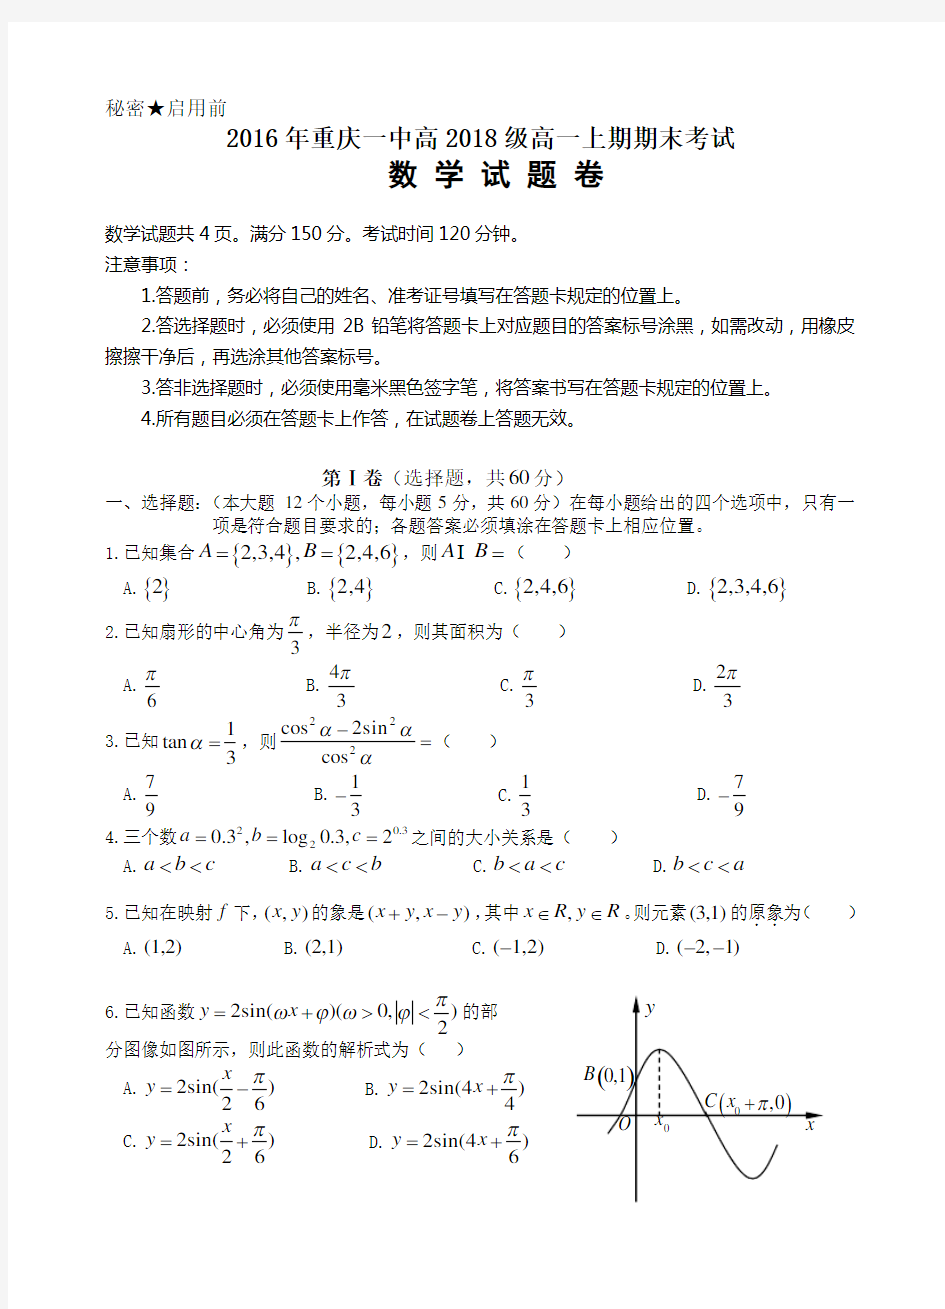 2016年重庆一中高2018年度级高一上期期末专业考试数学试卷内容答案